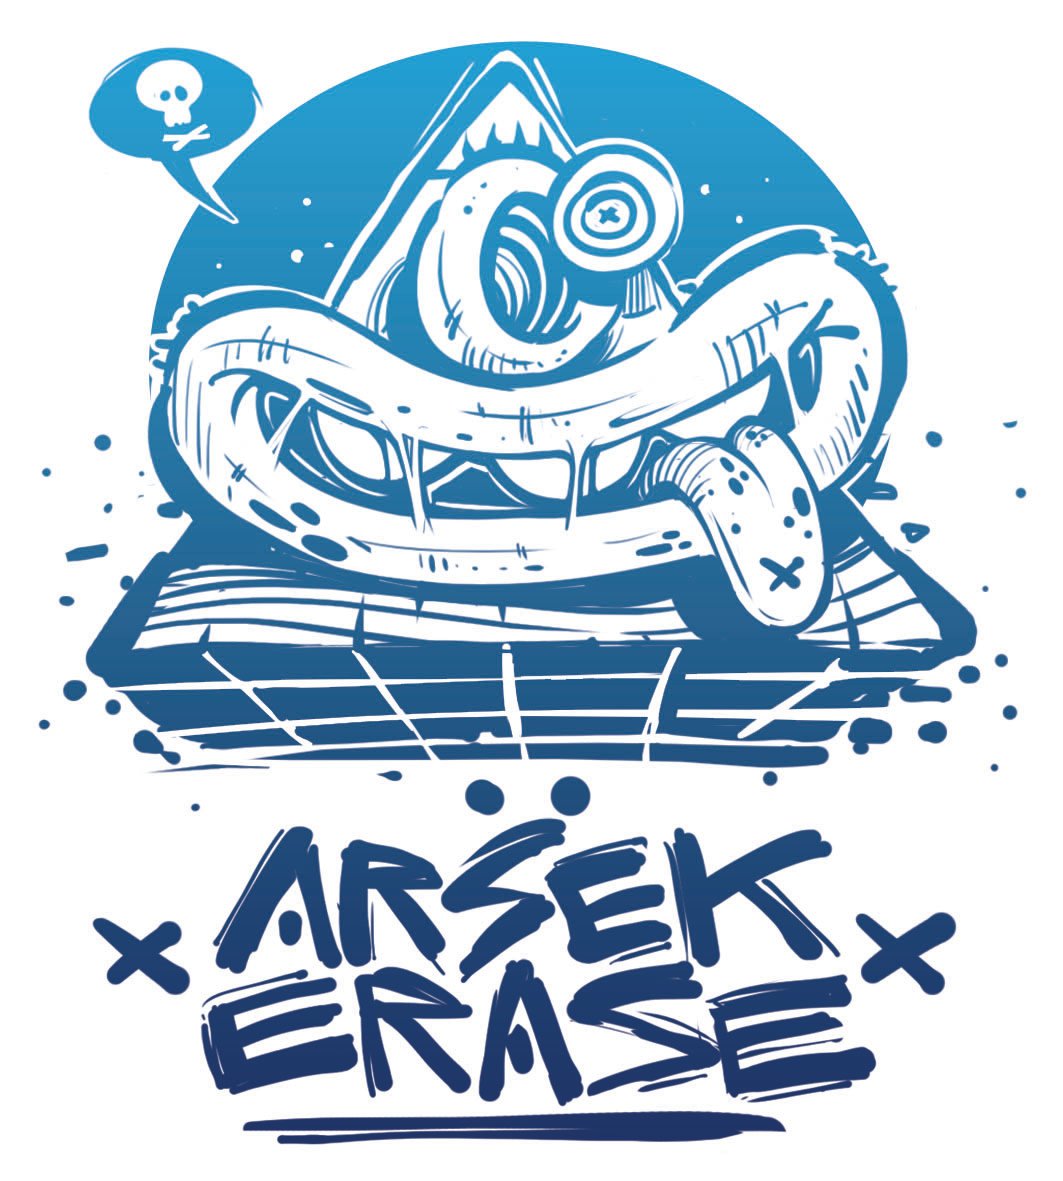 Arsek & Erase